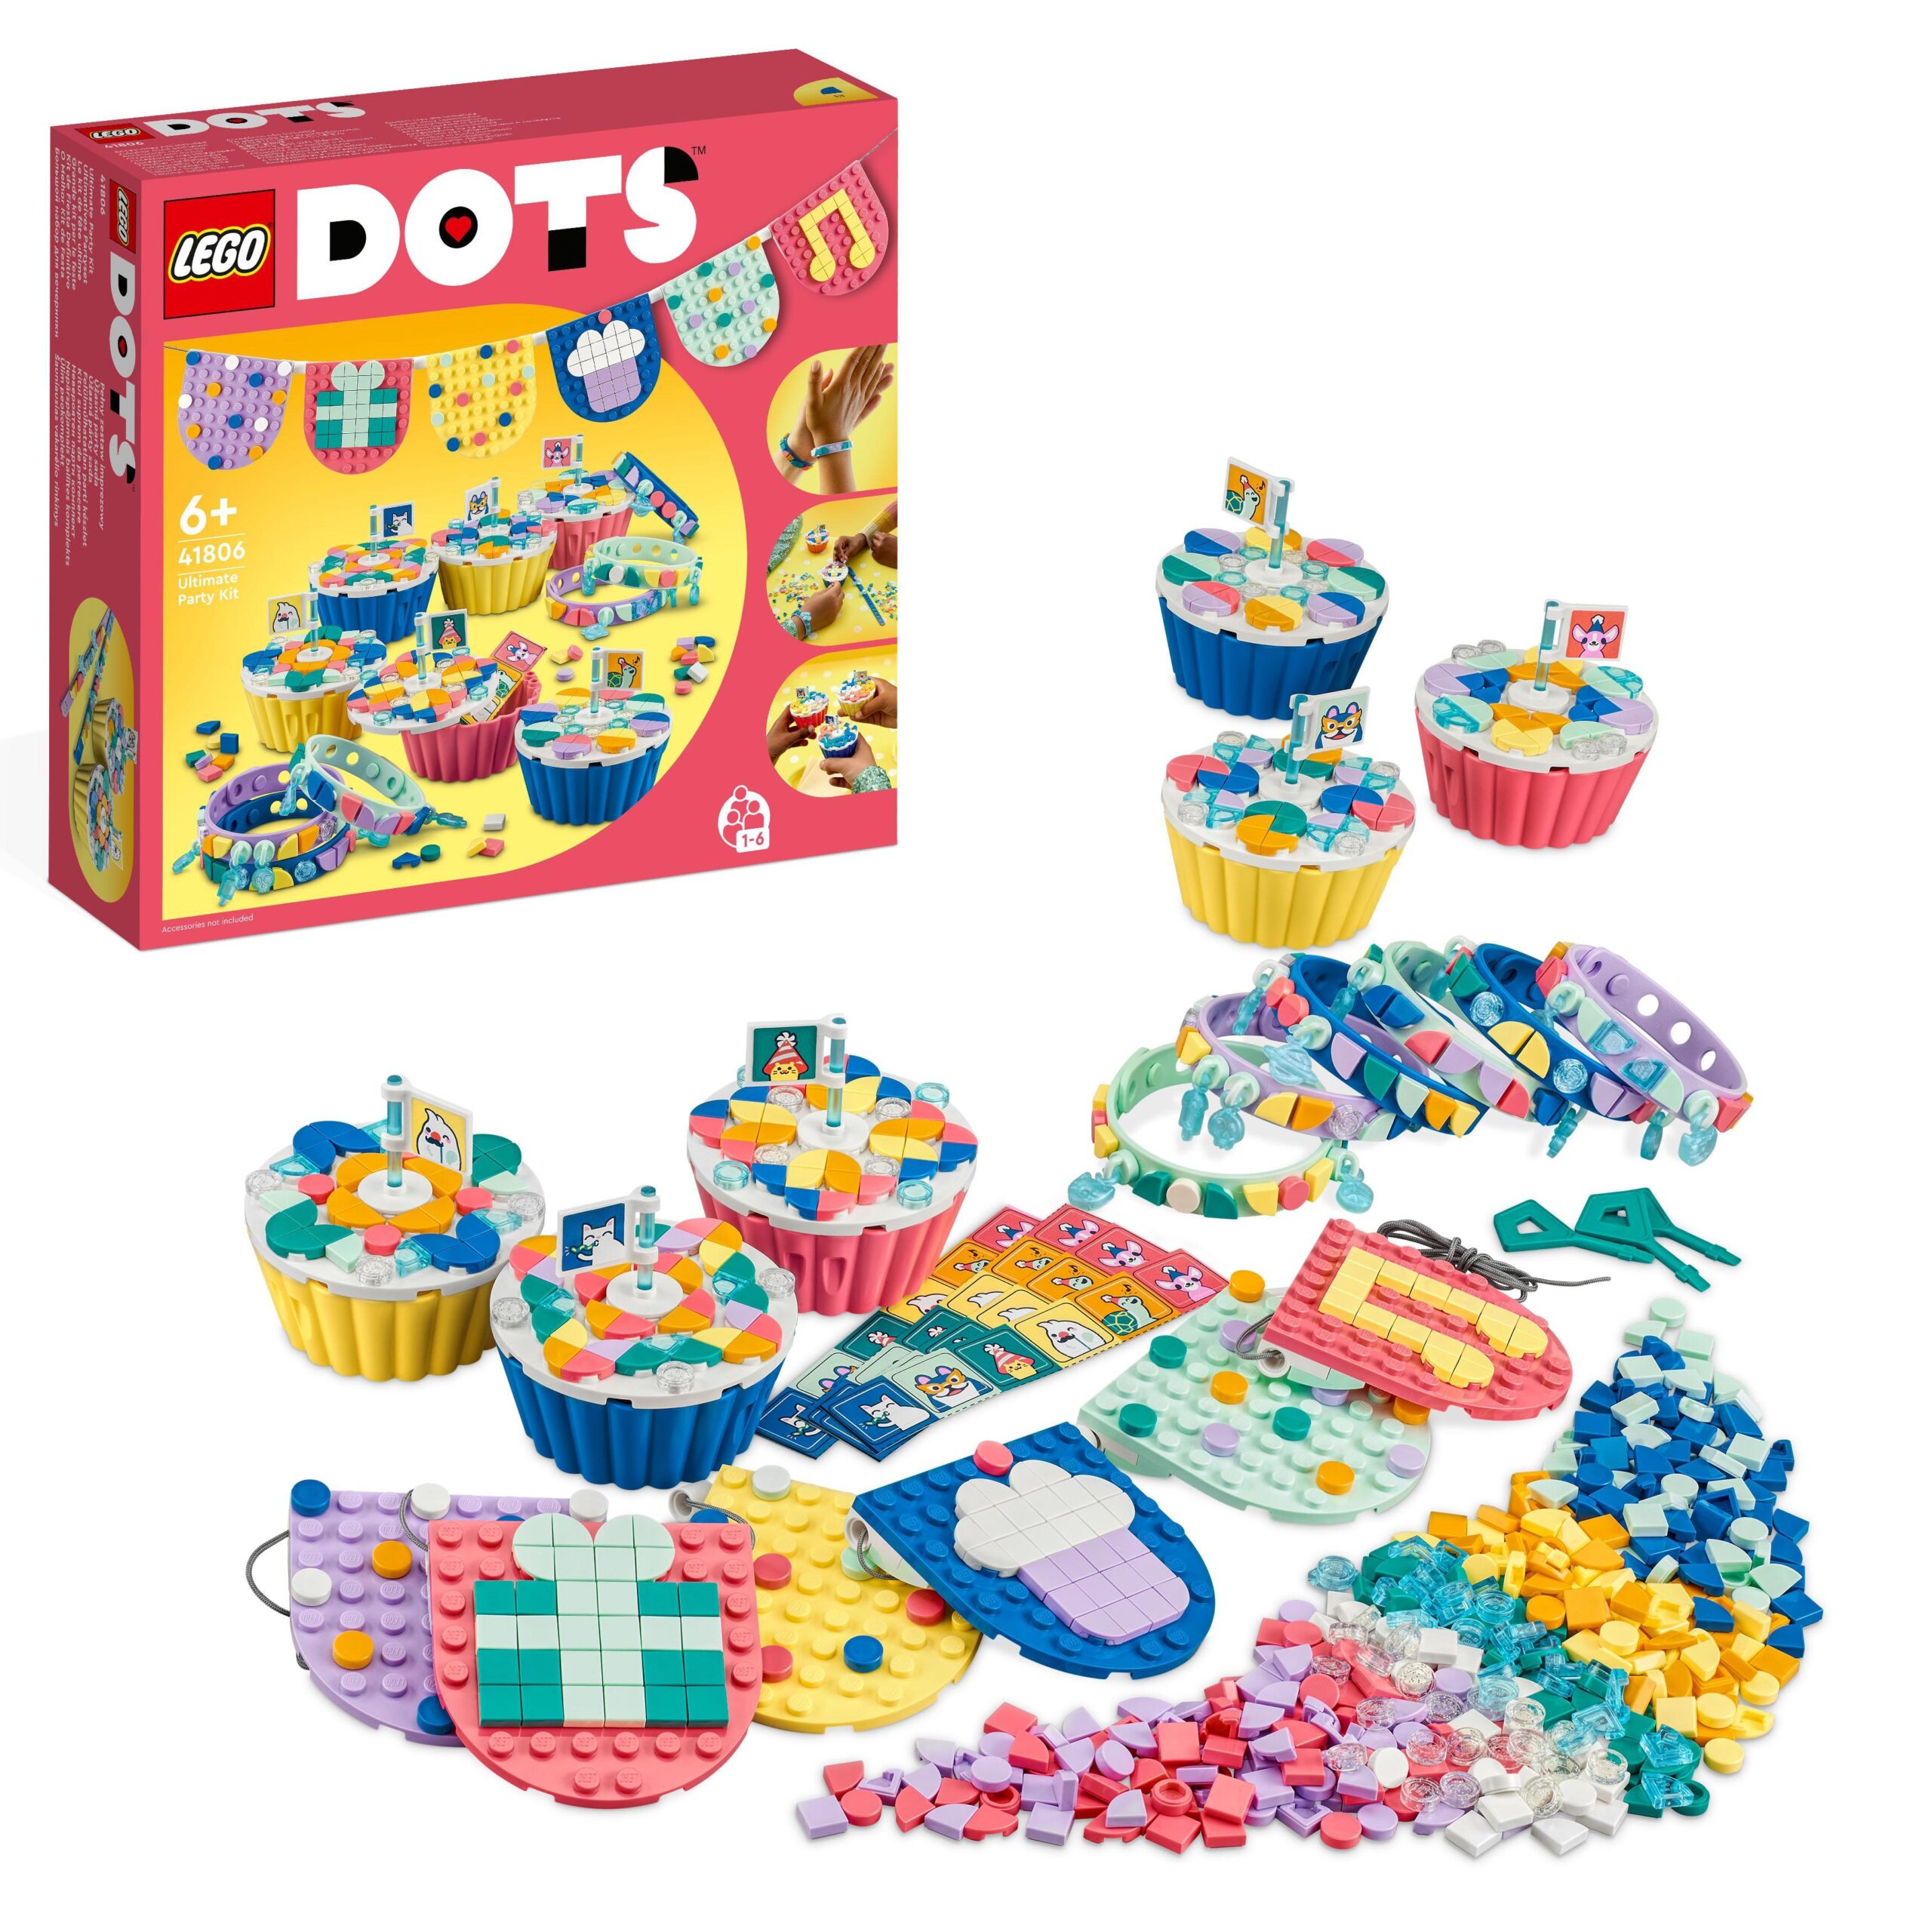 Lego dots 41806 grande kit per le feste, giochi festa compleanno